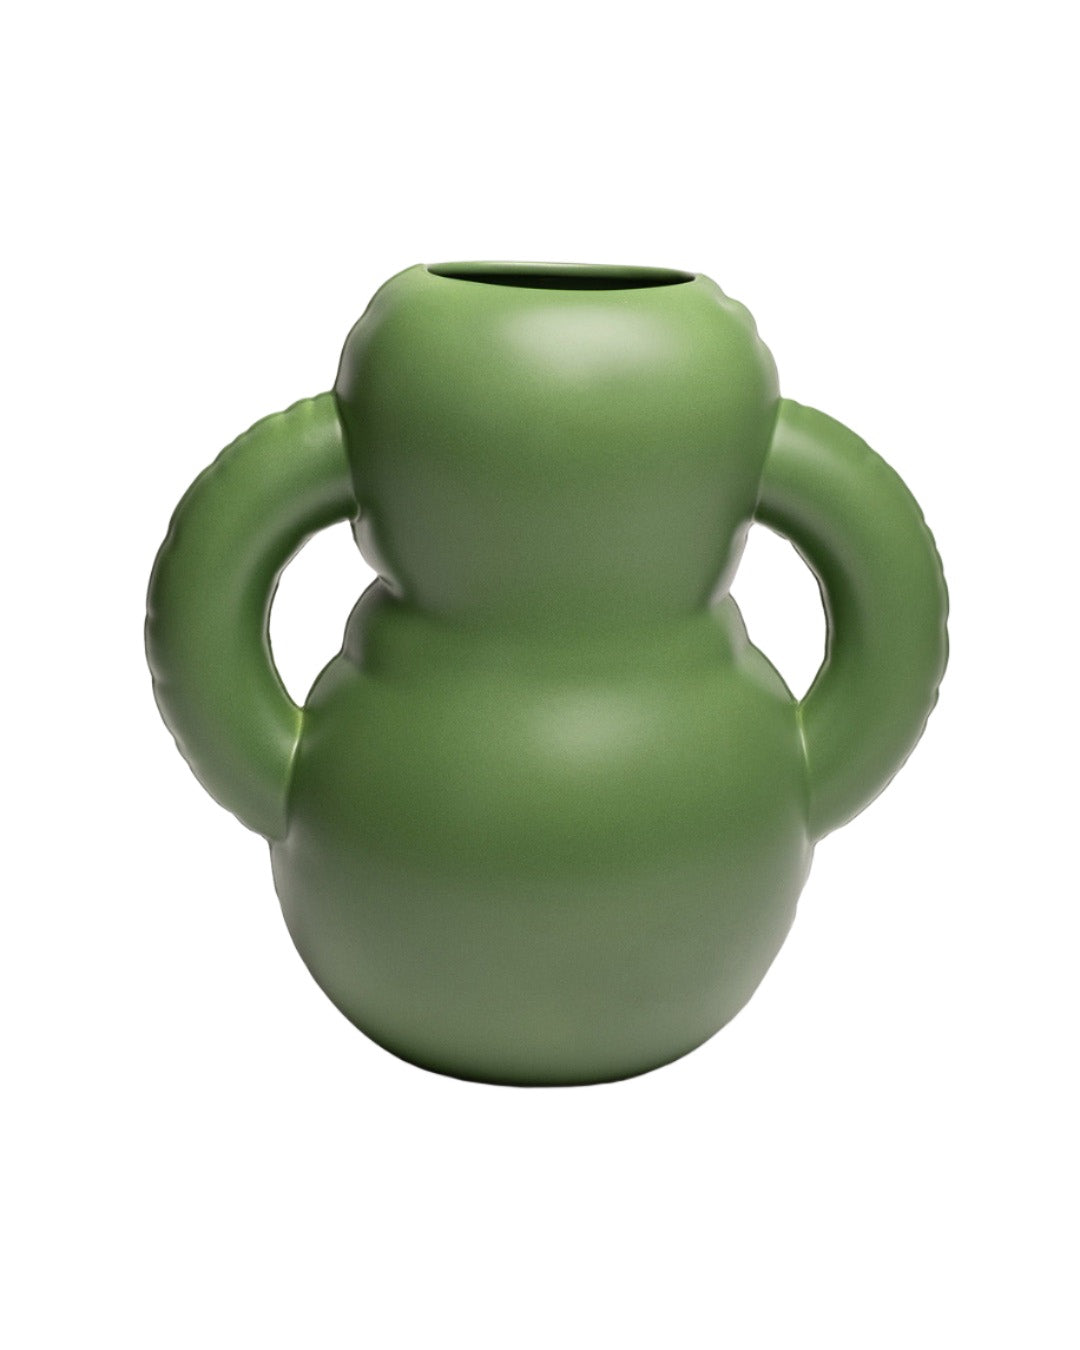 Handamde ceramic vase - Home Studyo